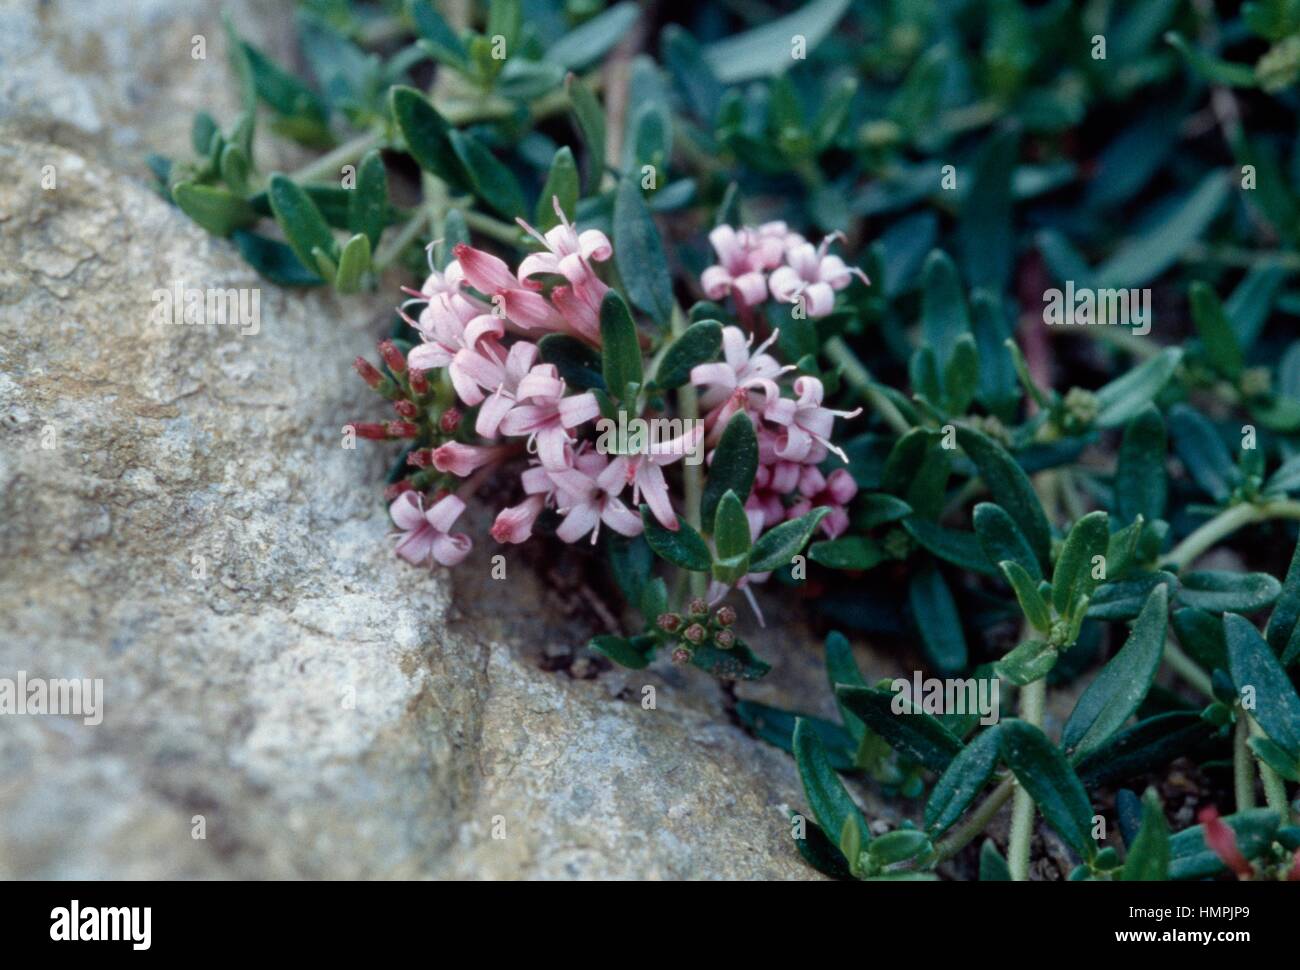 Stinking madder (Putoria calabrica), Rubiaceae. Stock Photo